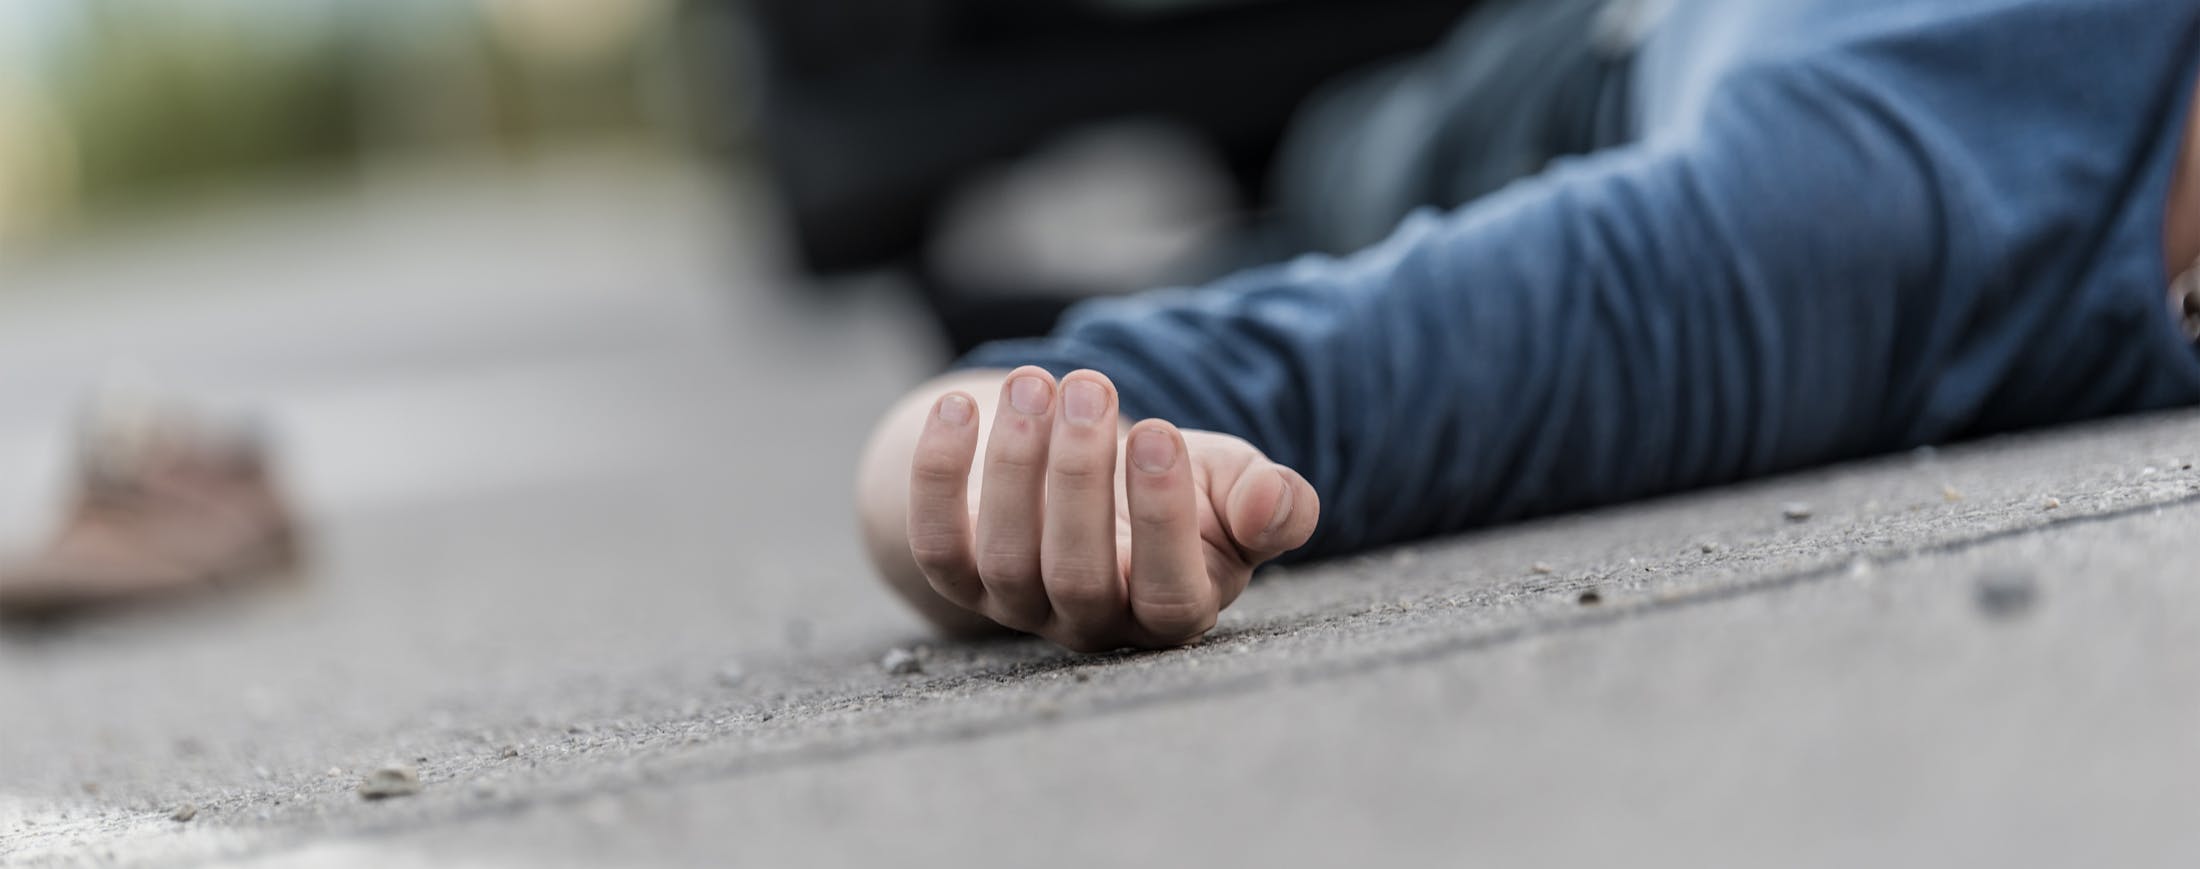 Man Injured on Floor - Pedestrian Accident Banner